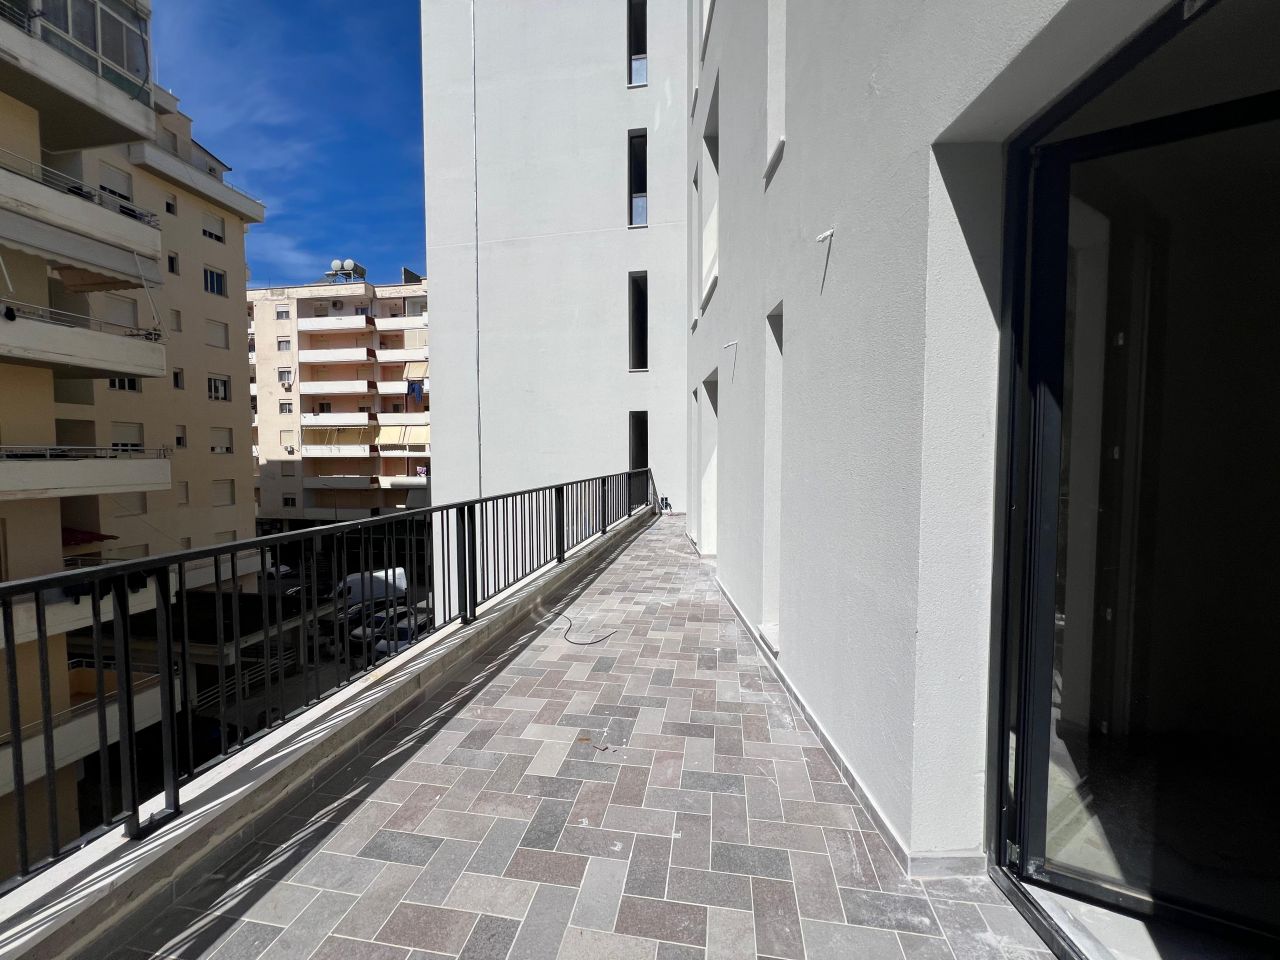 Wohnung Zum Verkauf In Vlore, Albanien, In Einem Neuen Gebäude, Nur Wenige Schritte Vom Strand Entfernt